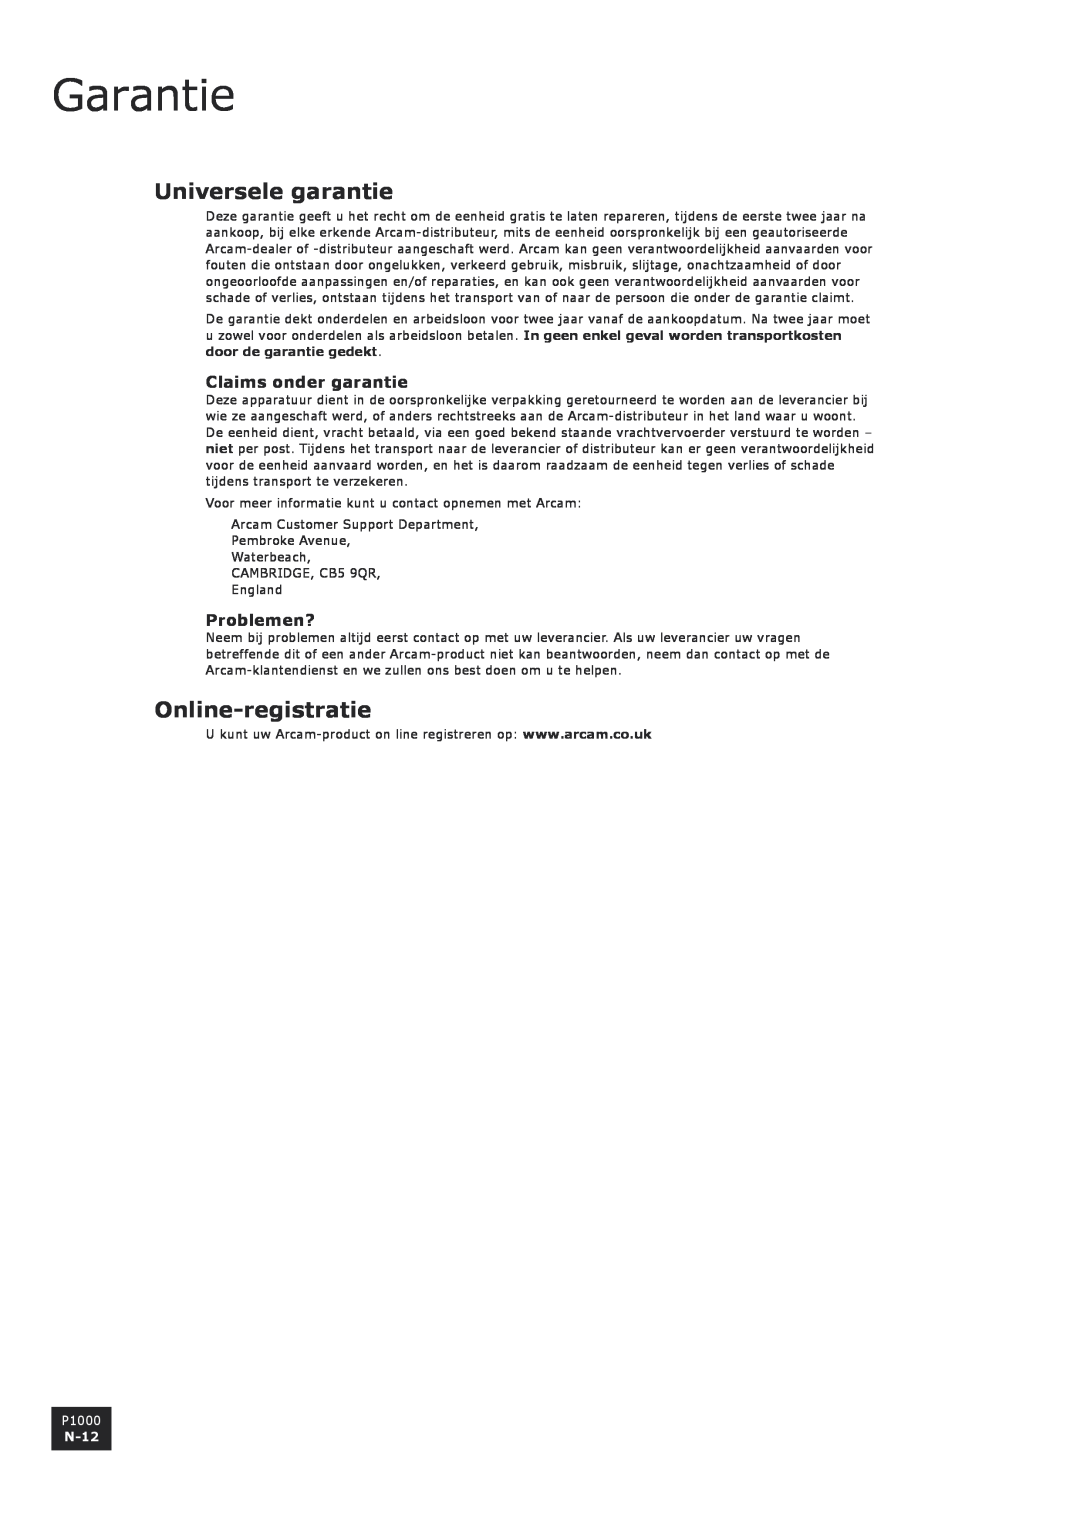 Arcam P1000 manual Universele garantie, Online-registratie, Claims onder garantie, Problemen?, N-12, Garantie 